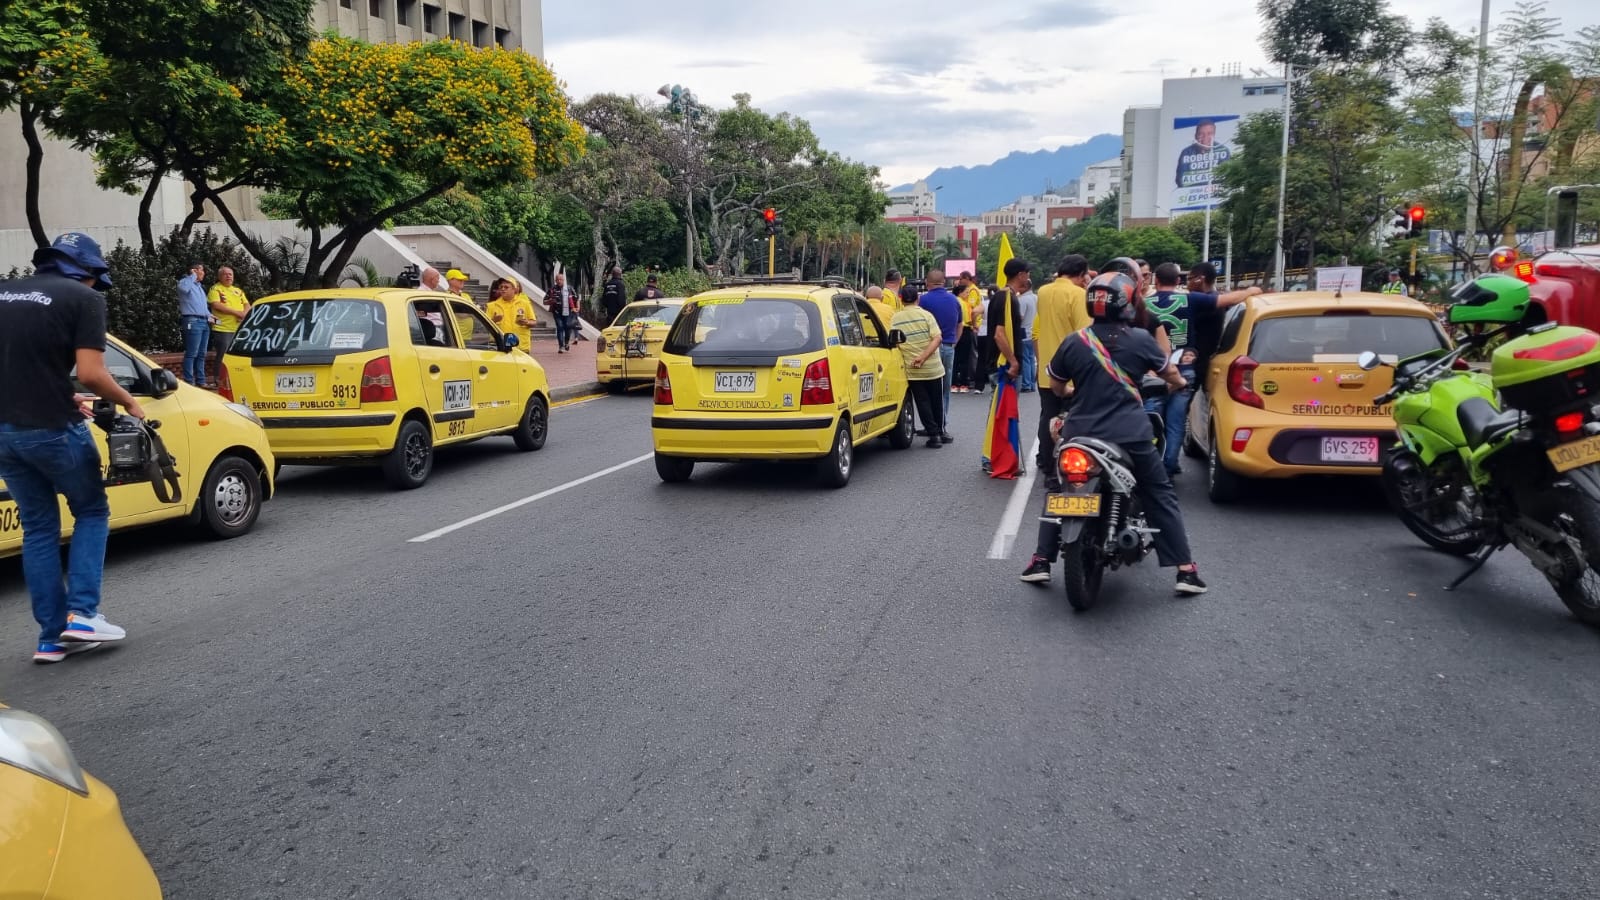 ¿Cuál fue el acuerdo entre taxistas y el Gobierno tras protestas? Aquí le contamos